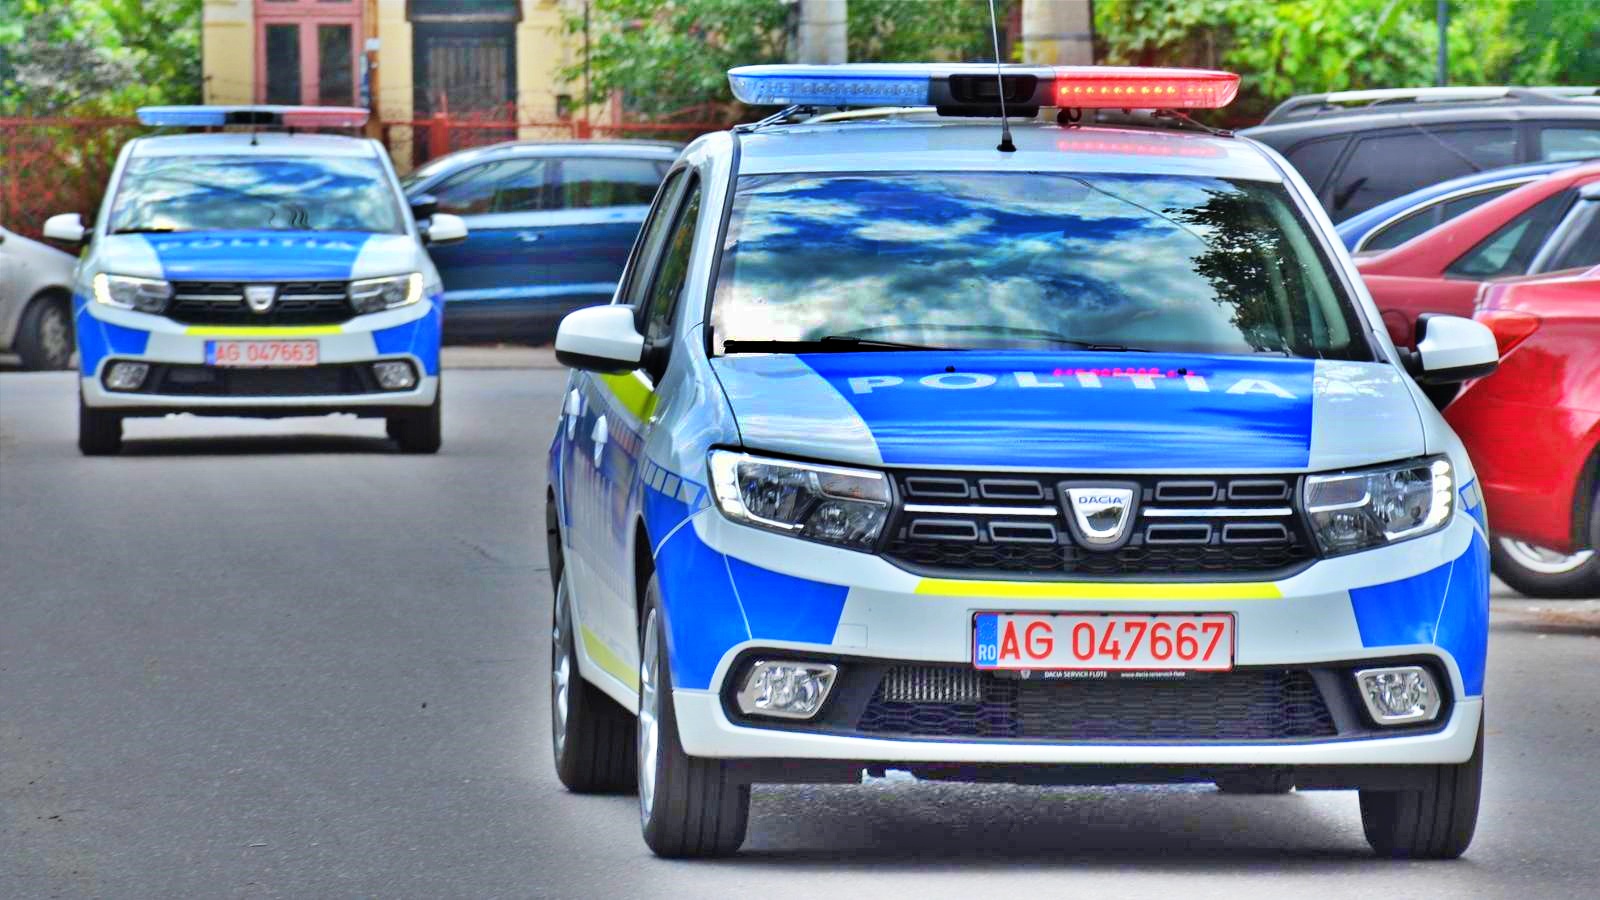 Roemeense politiewaarschuwing voor chauffeurs uit heel Roemenië